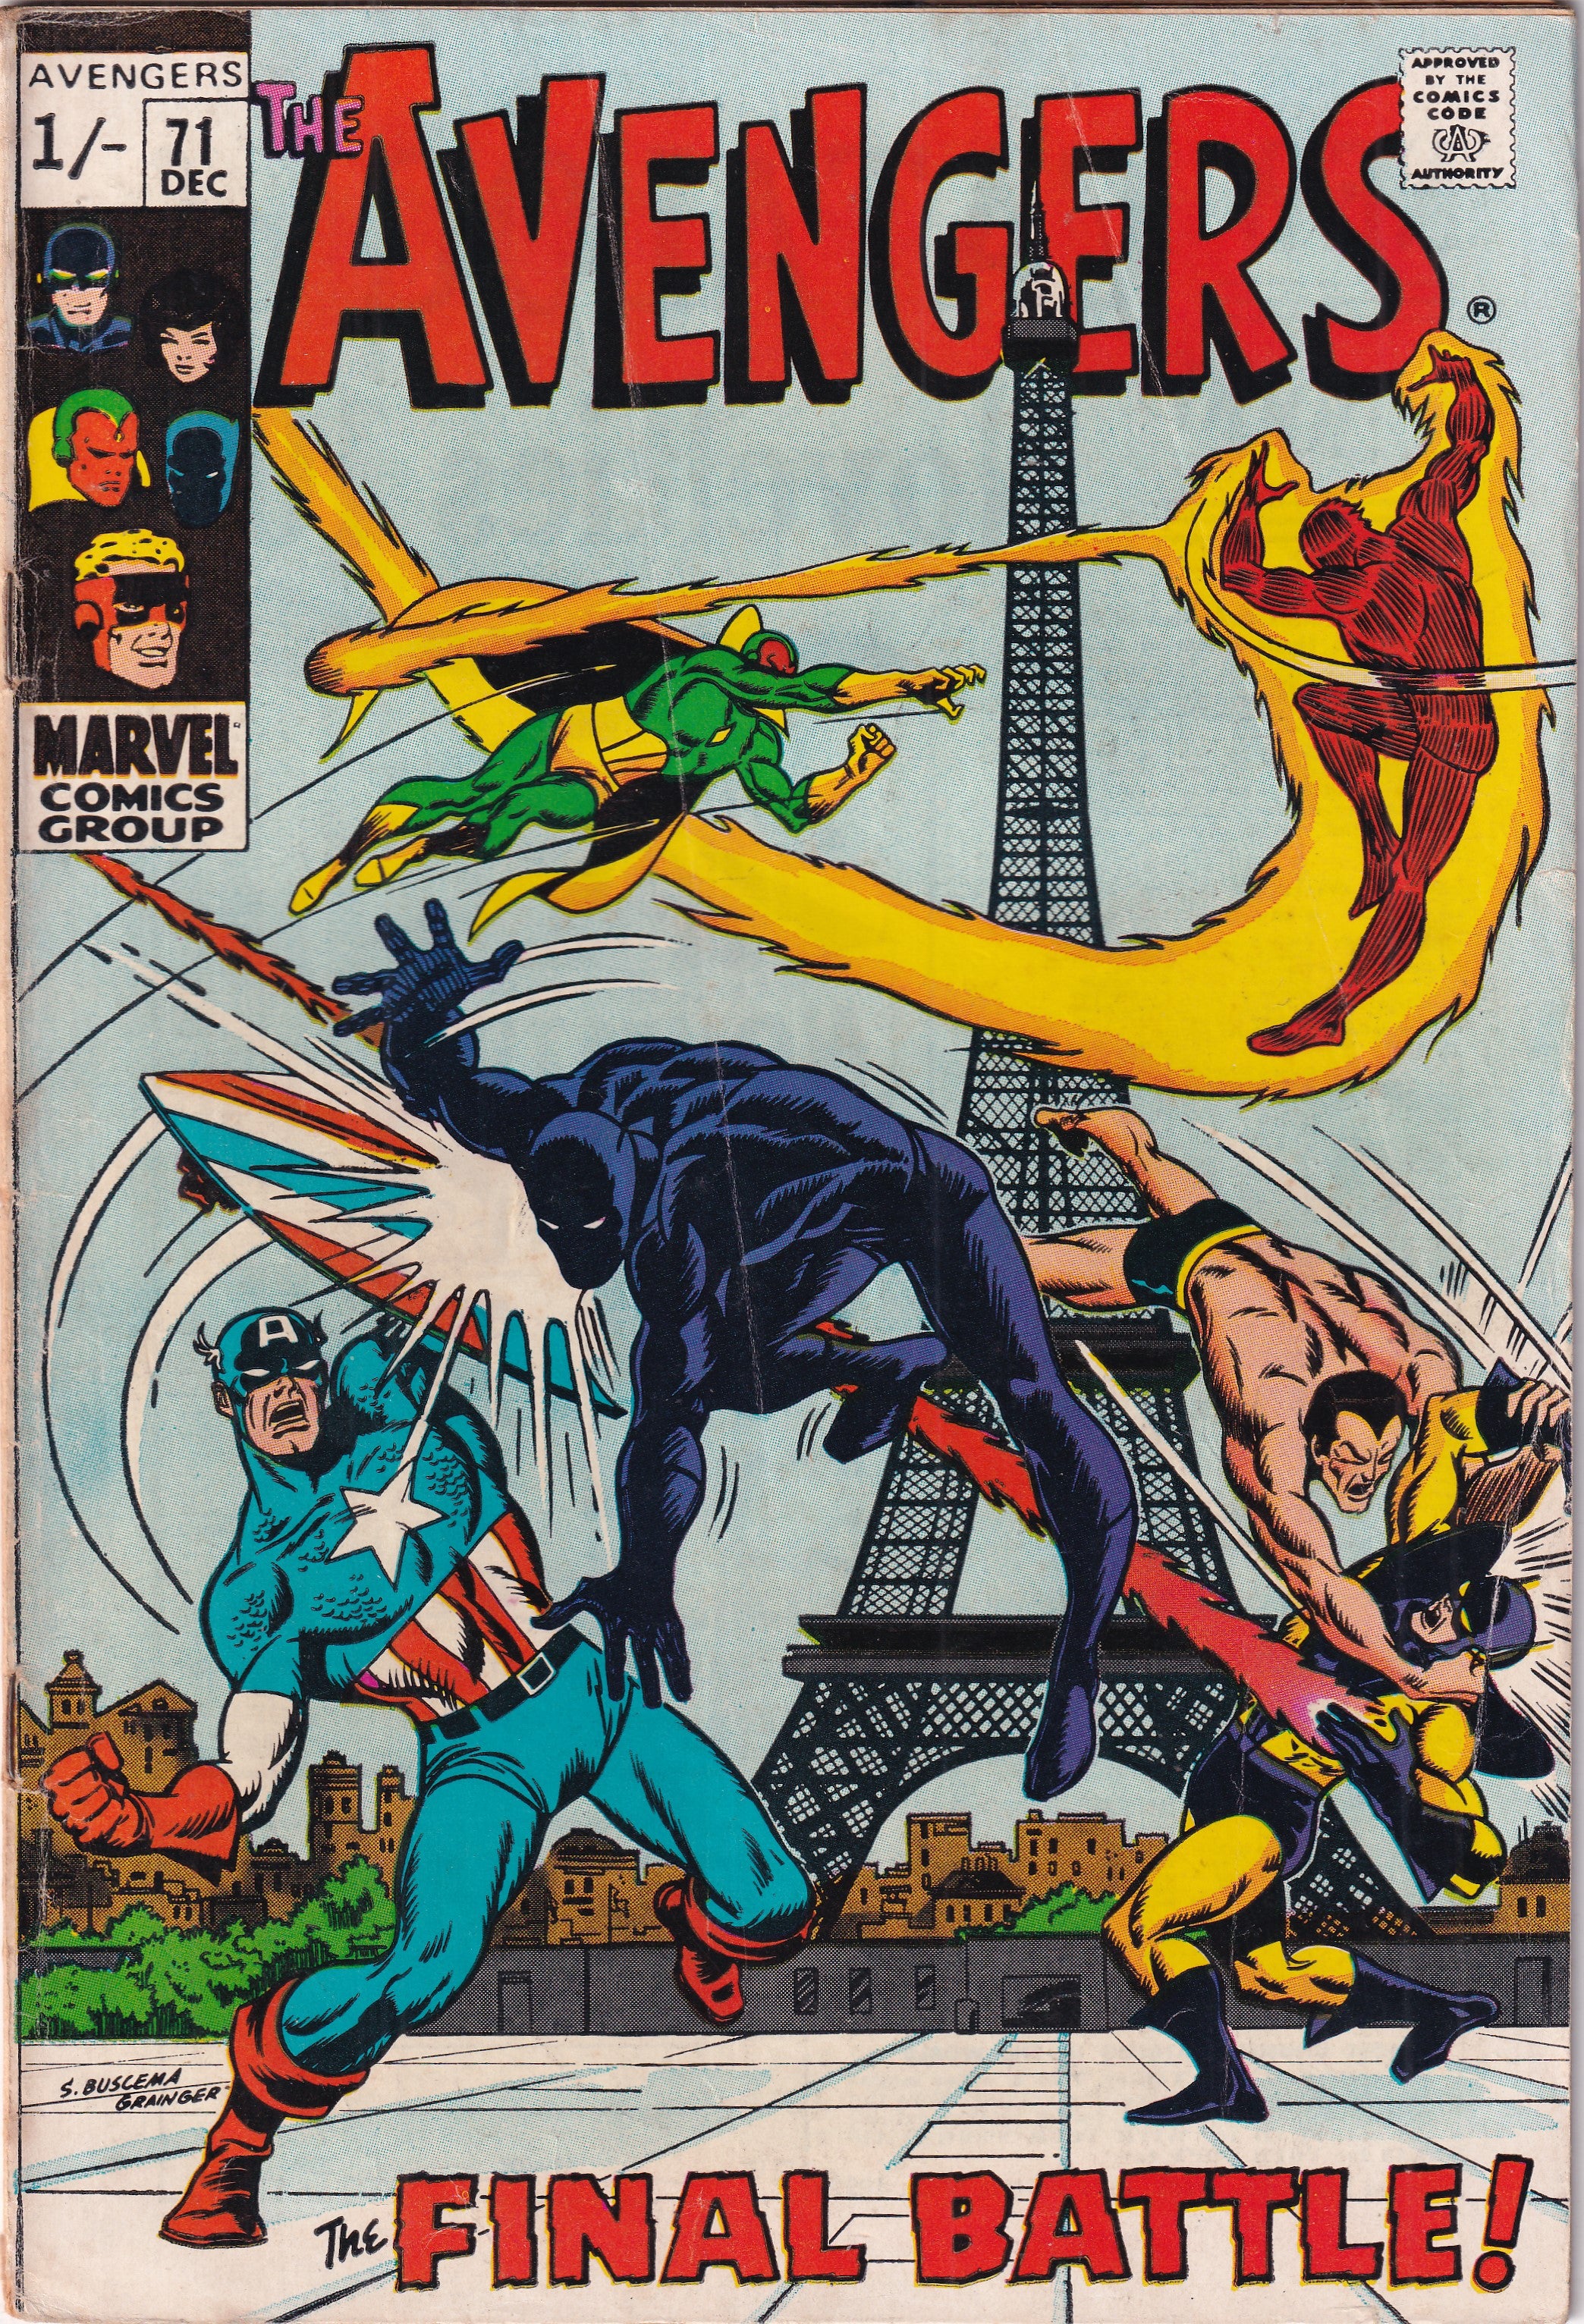 AVENGERS #71 - Slab City Comics 